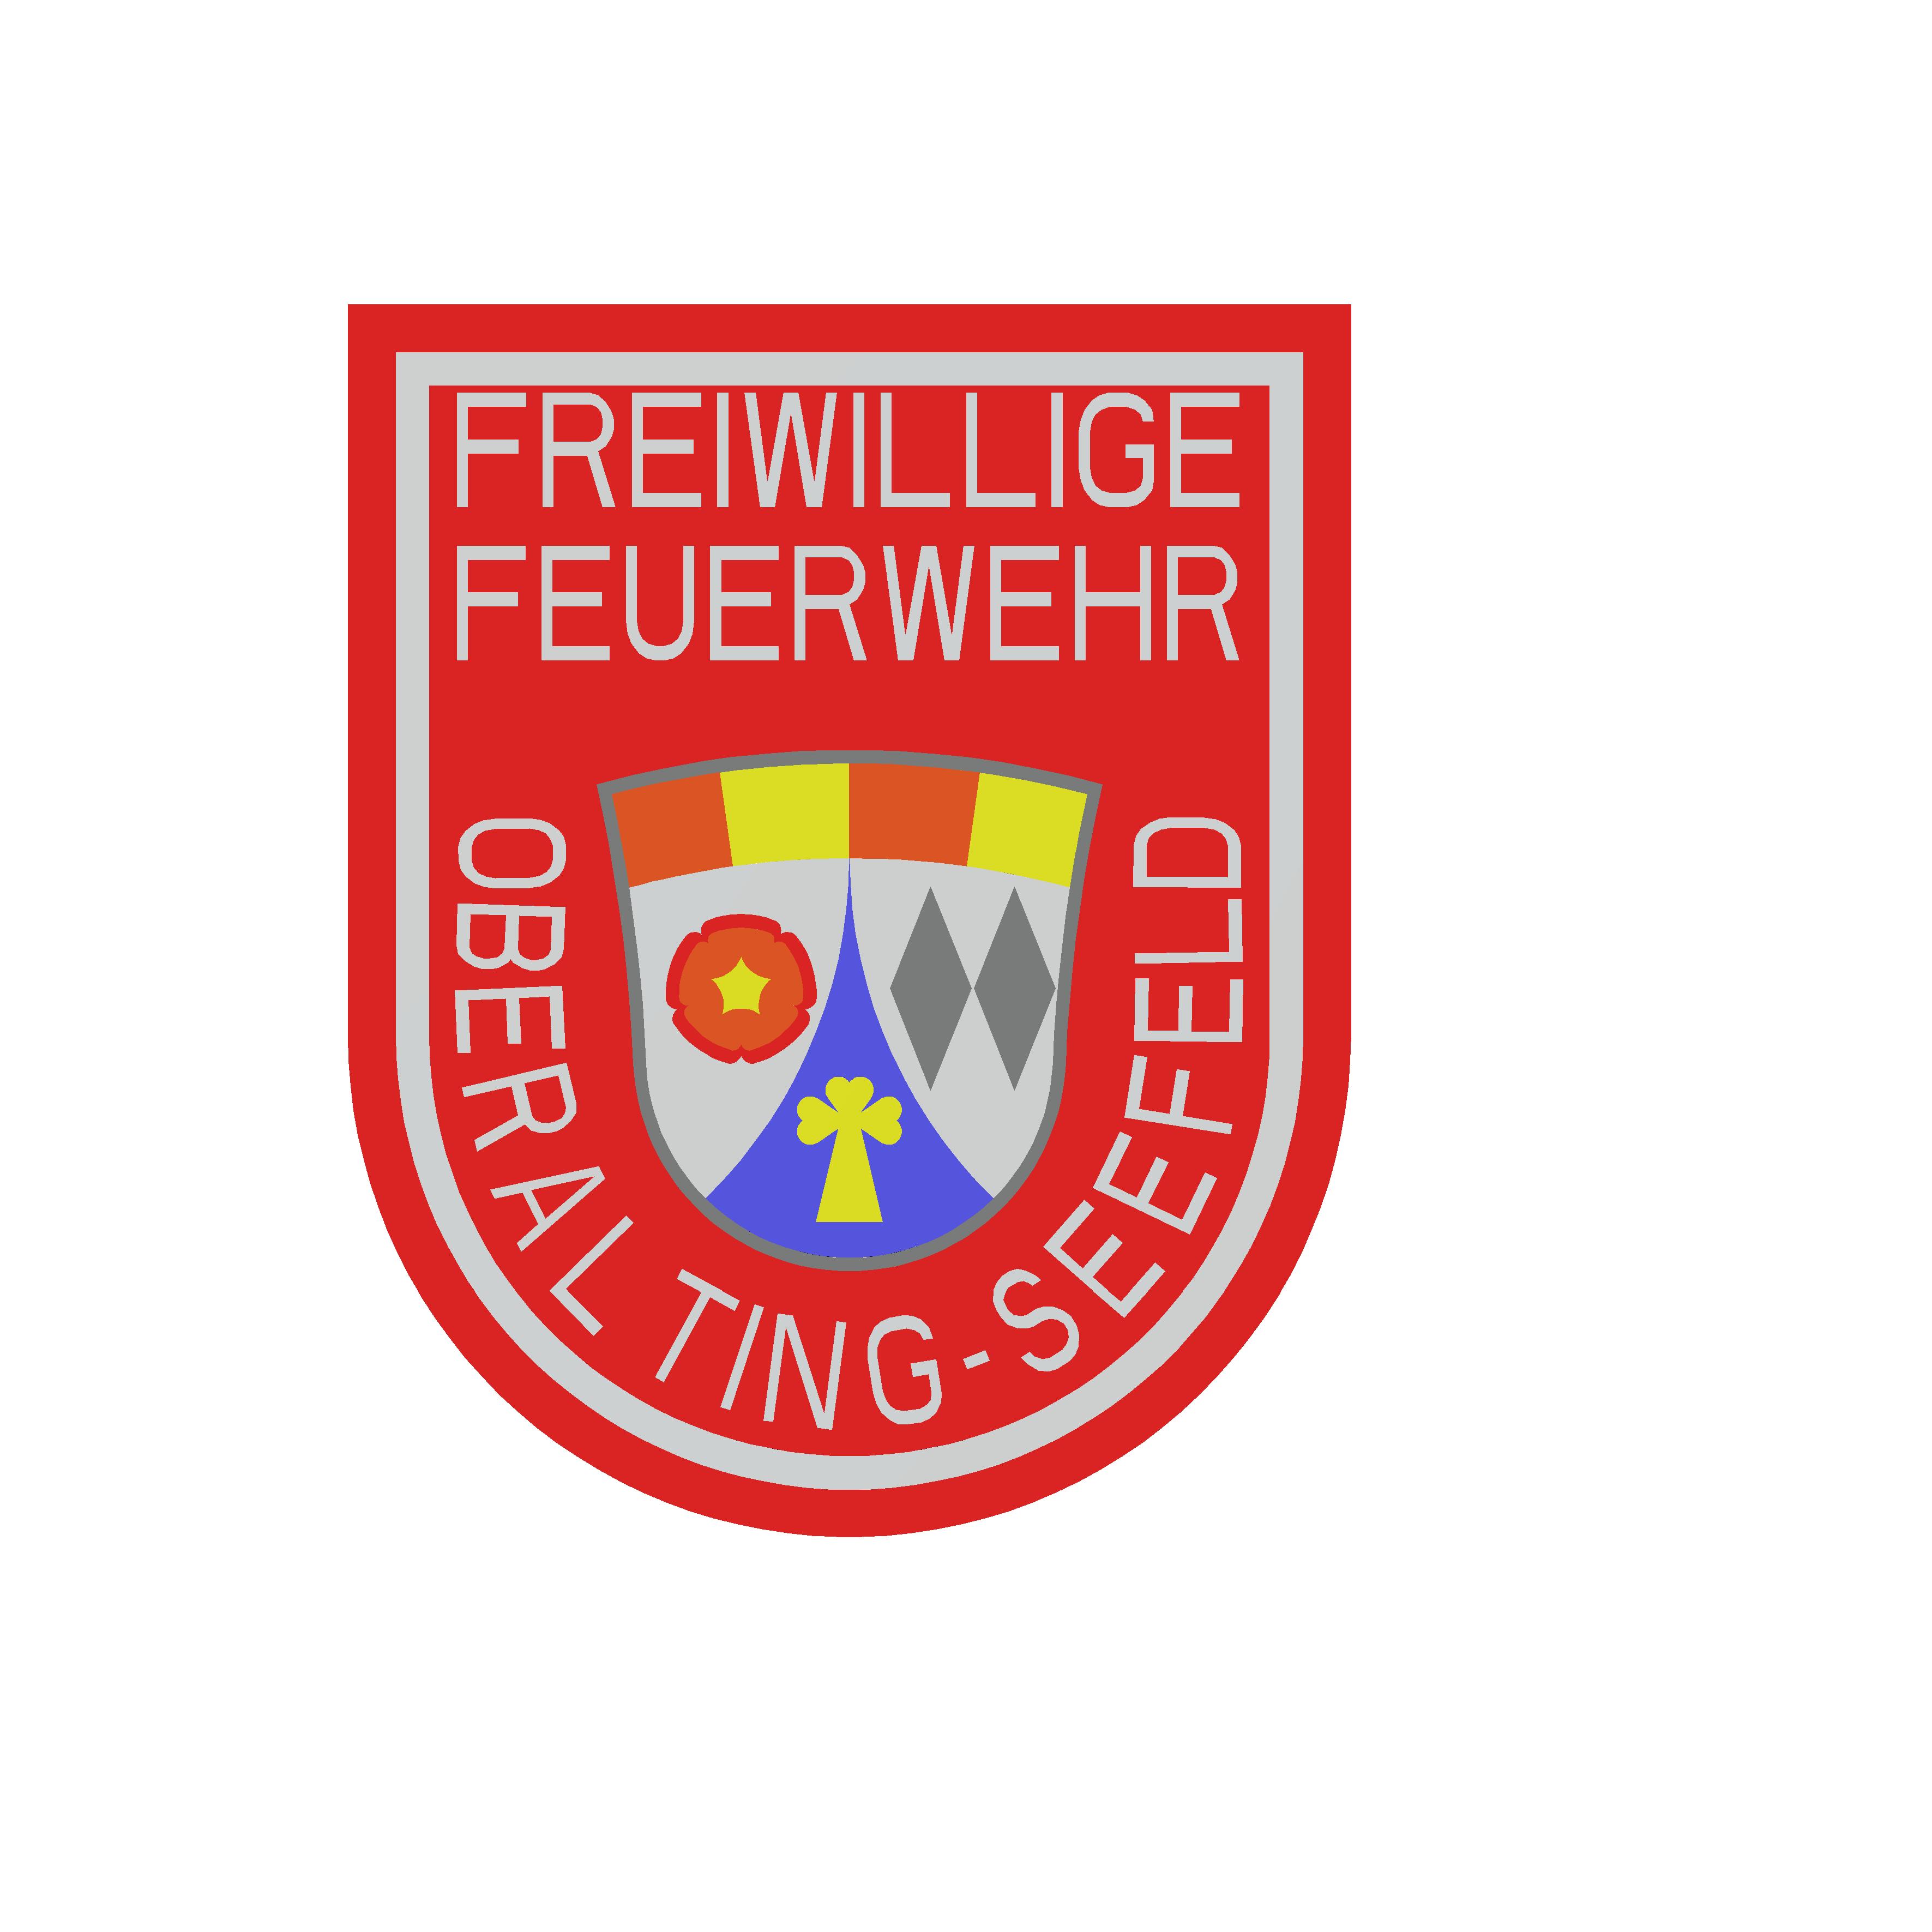 Feuerwehr Oberalting-Seefeld